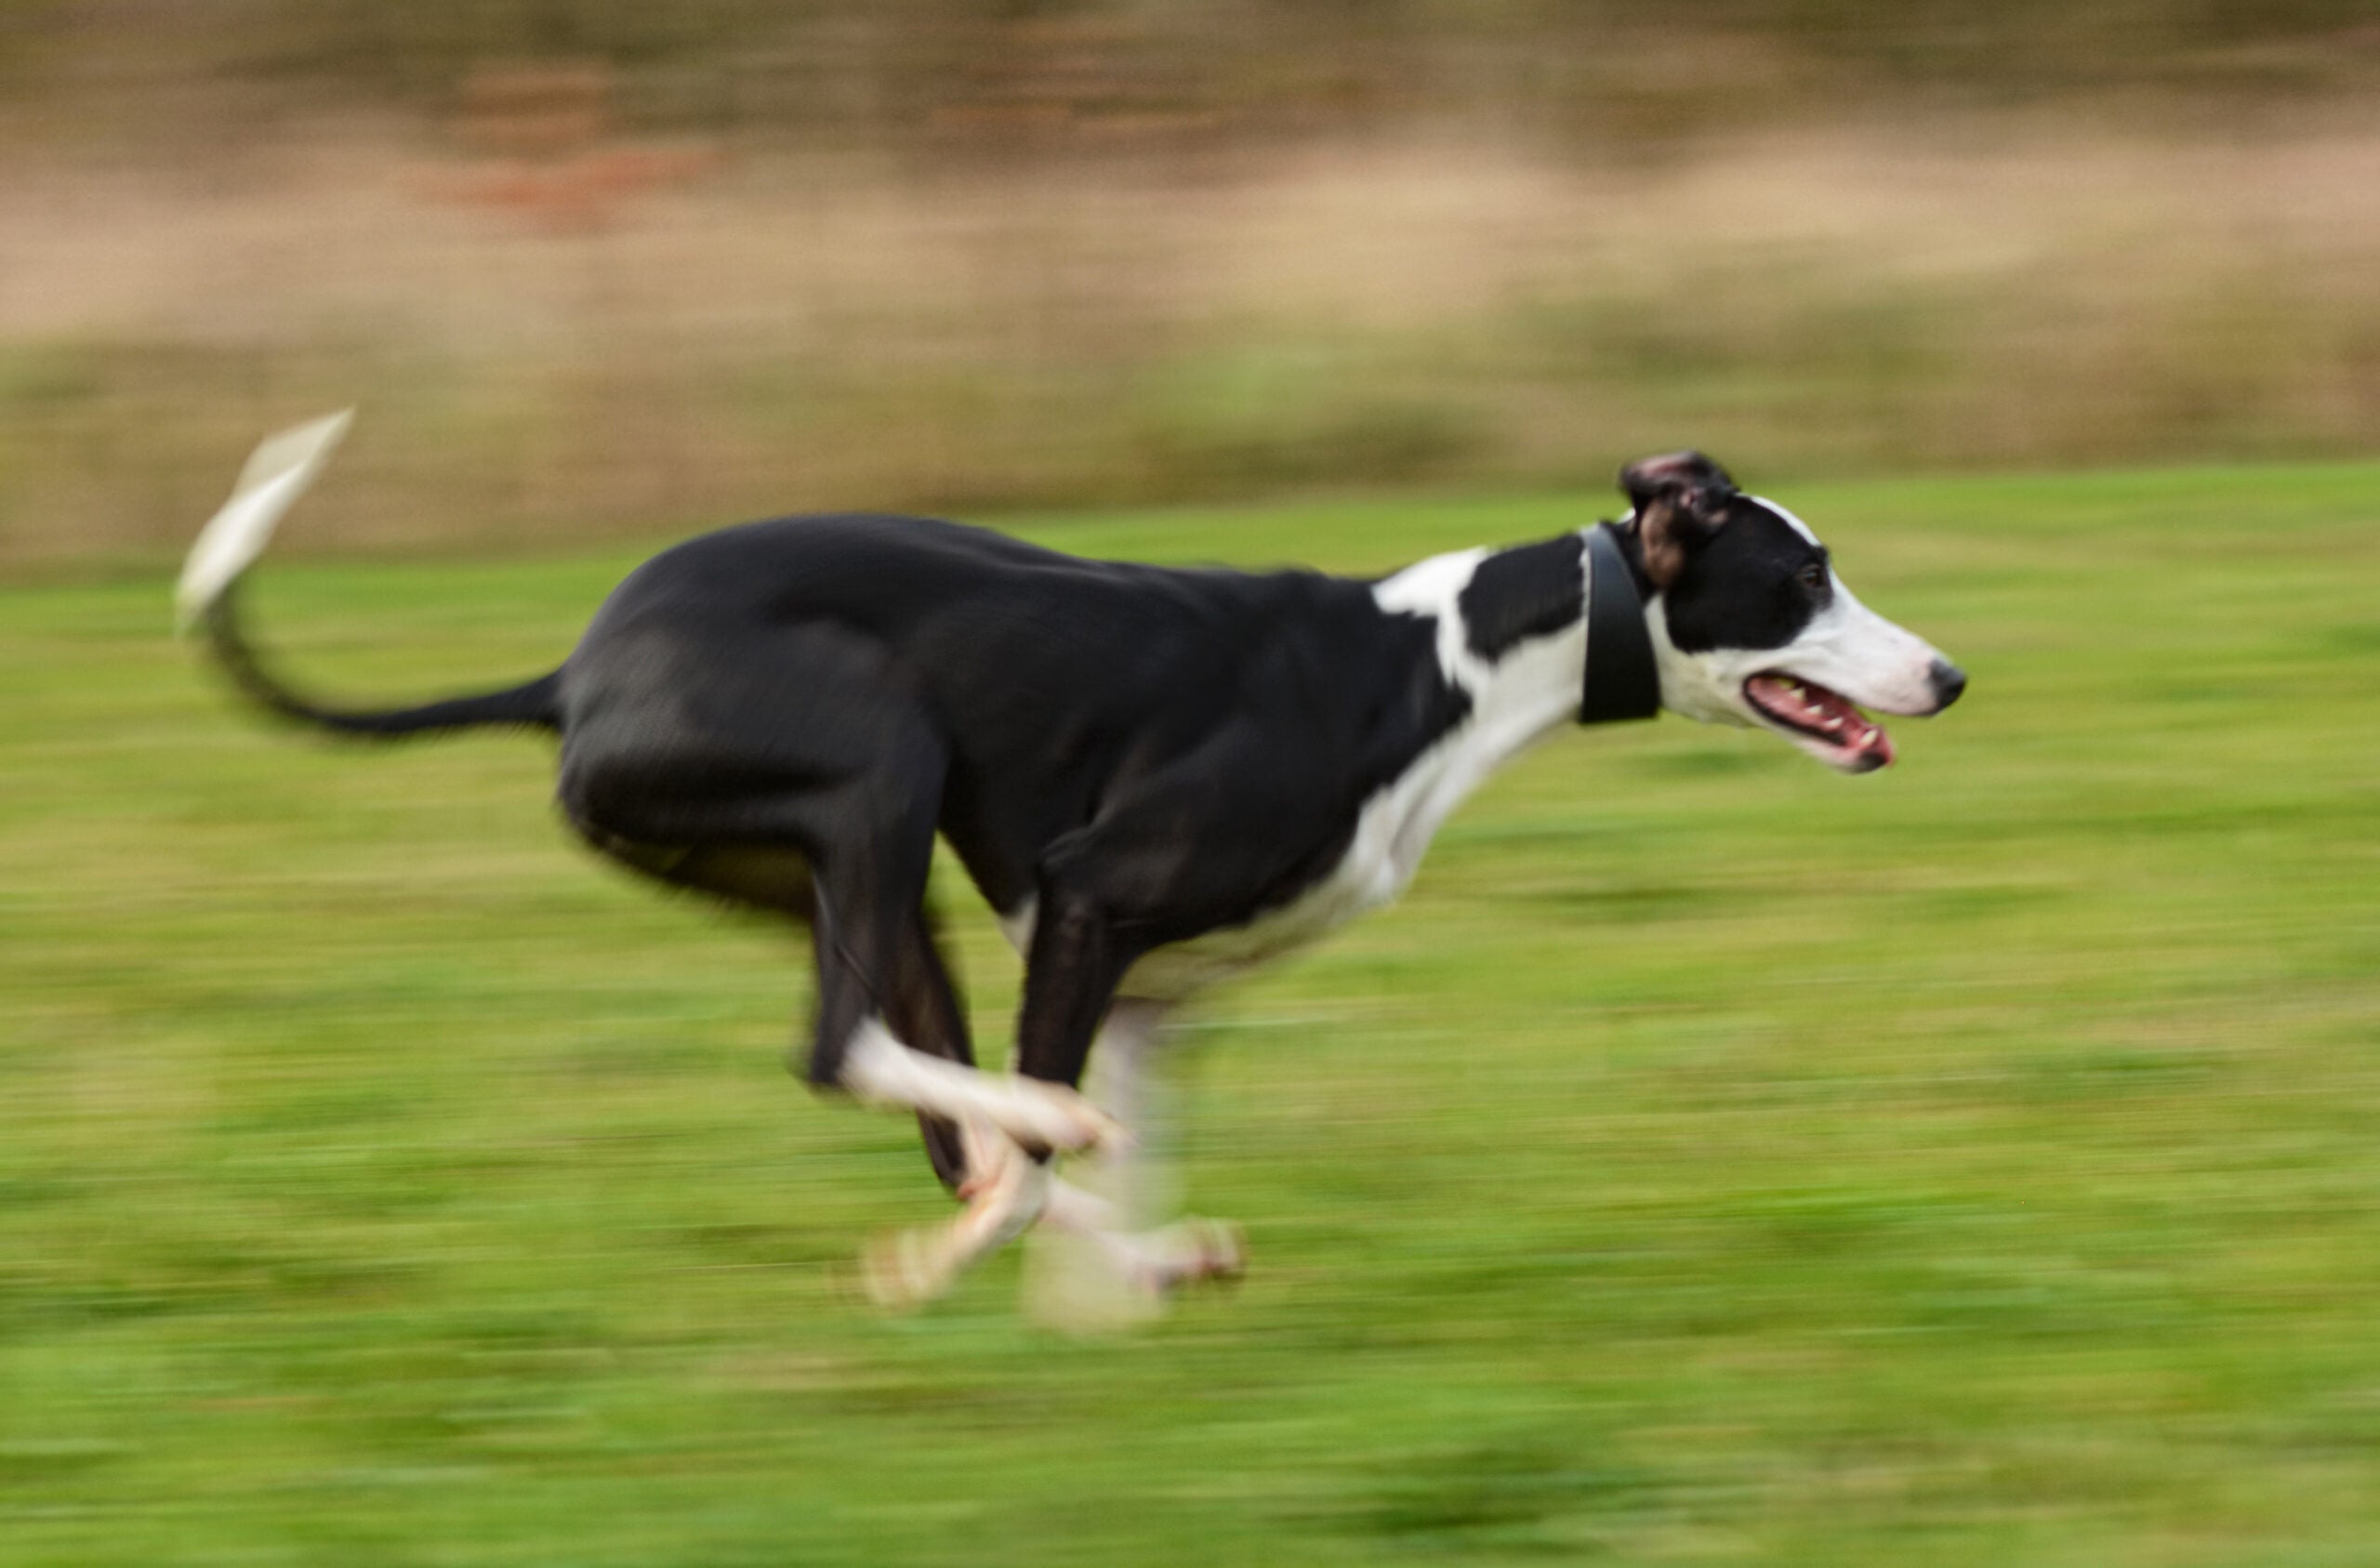 A Lurcher dog has been caught running fast.